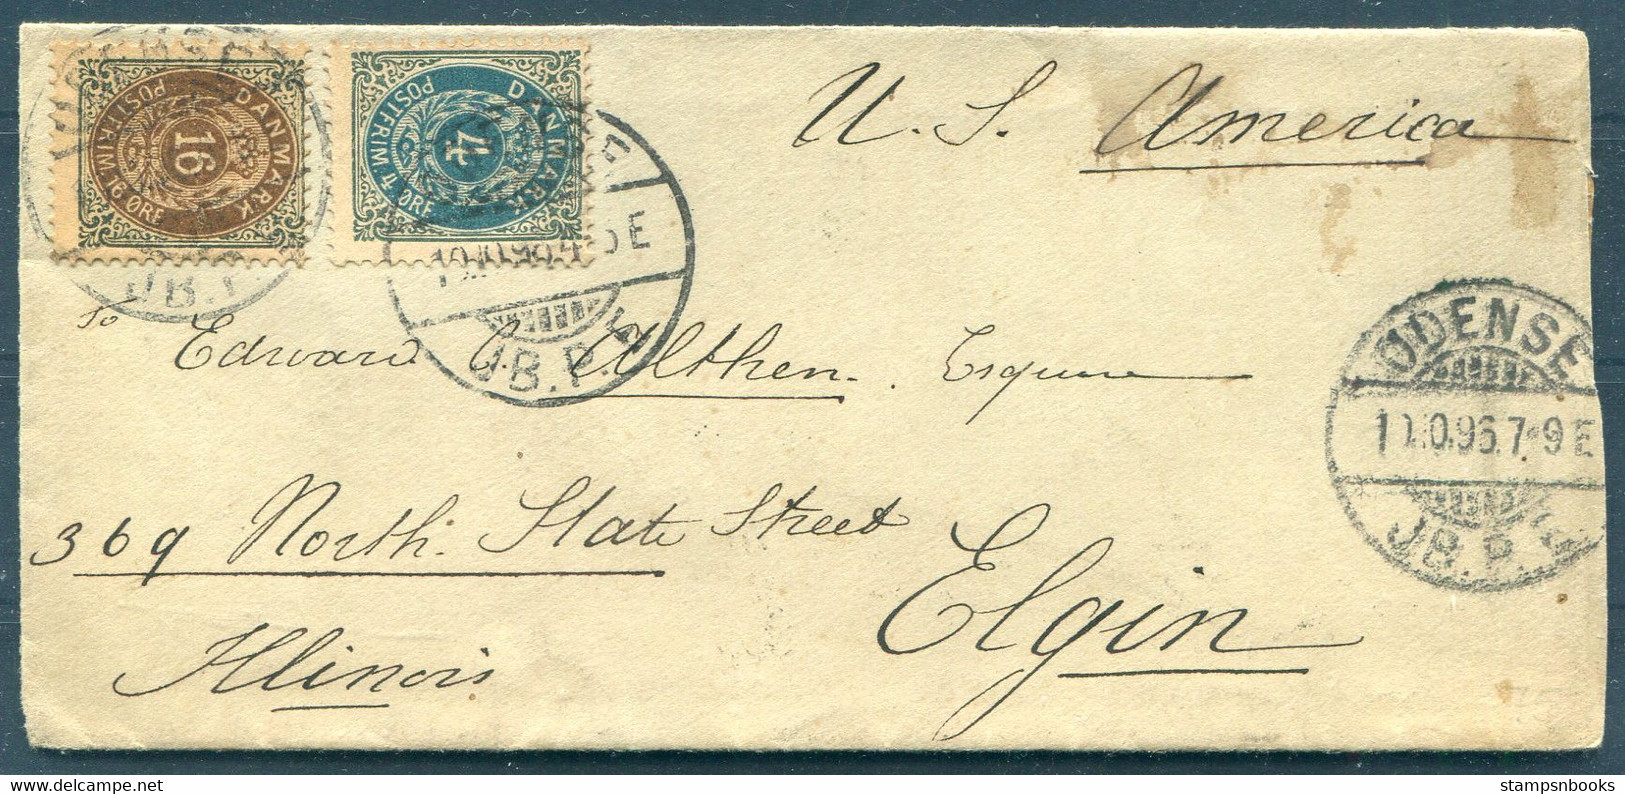 1896 Denmark 20ore Rate (16ore + 4ore) Odense J.B.P.E. Cover - Elgin Illinois USA Via New York. - Lettres & Documents